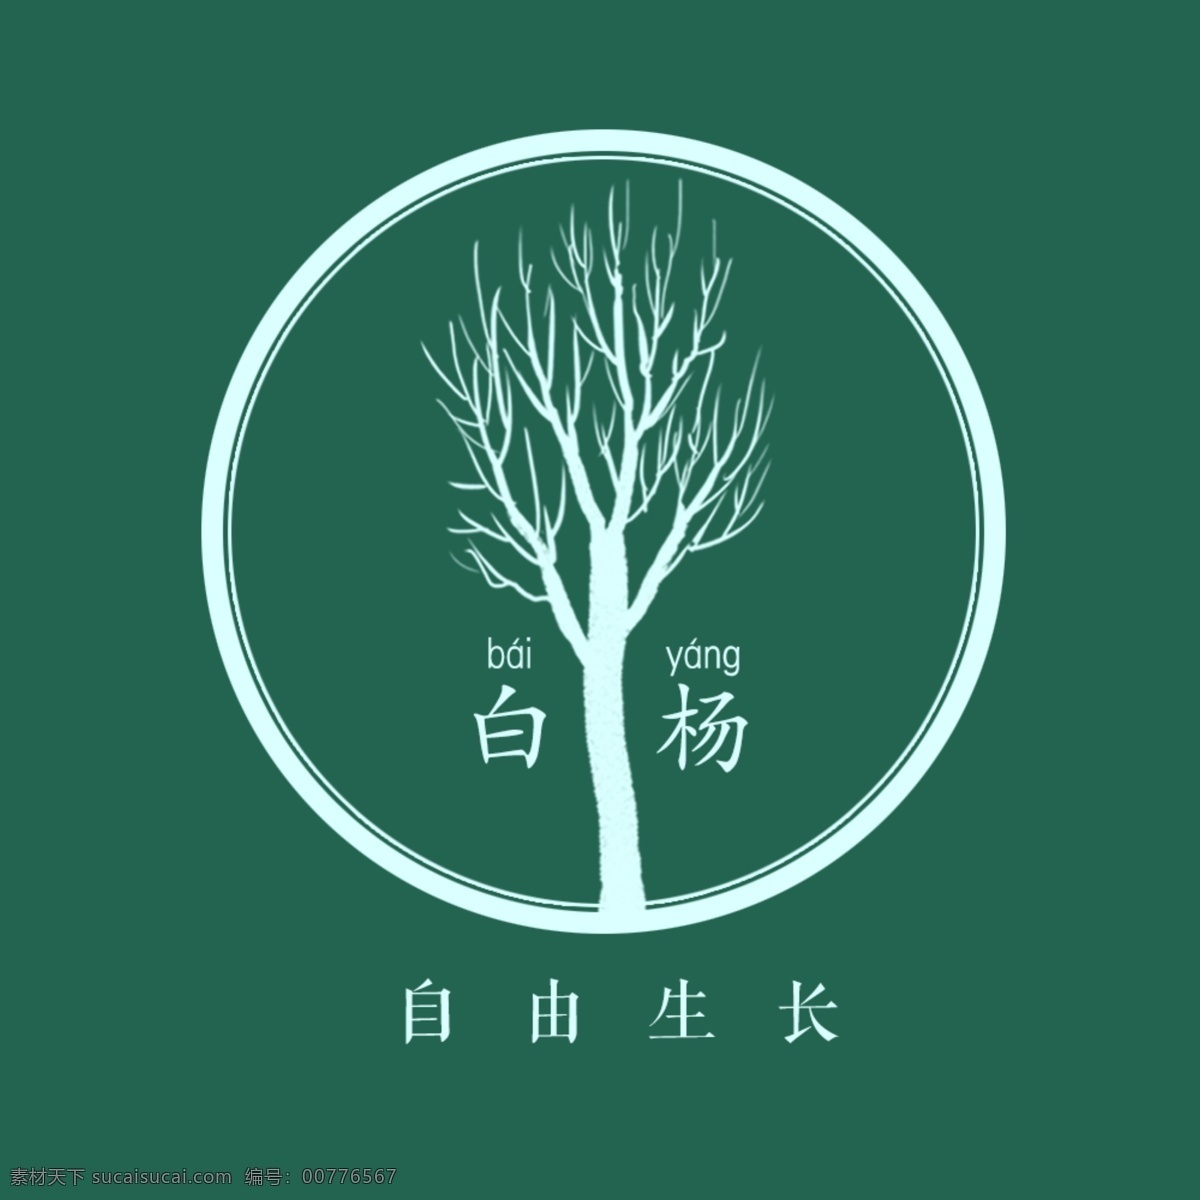 白杨 圆形 标志设计 杨树 树木 枝条 标志 logo 自由生长 标志图标 企业